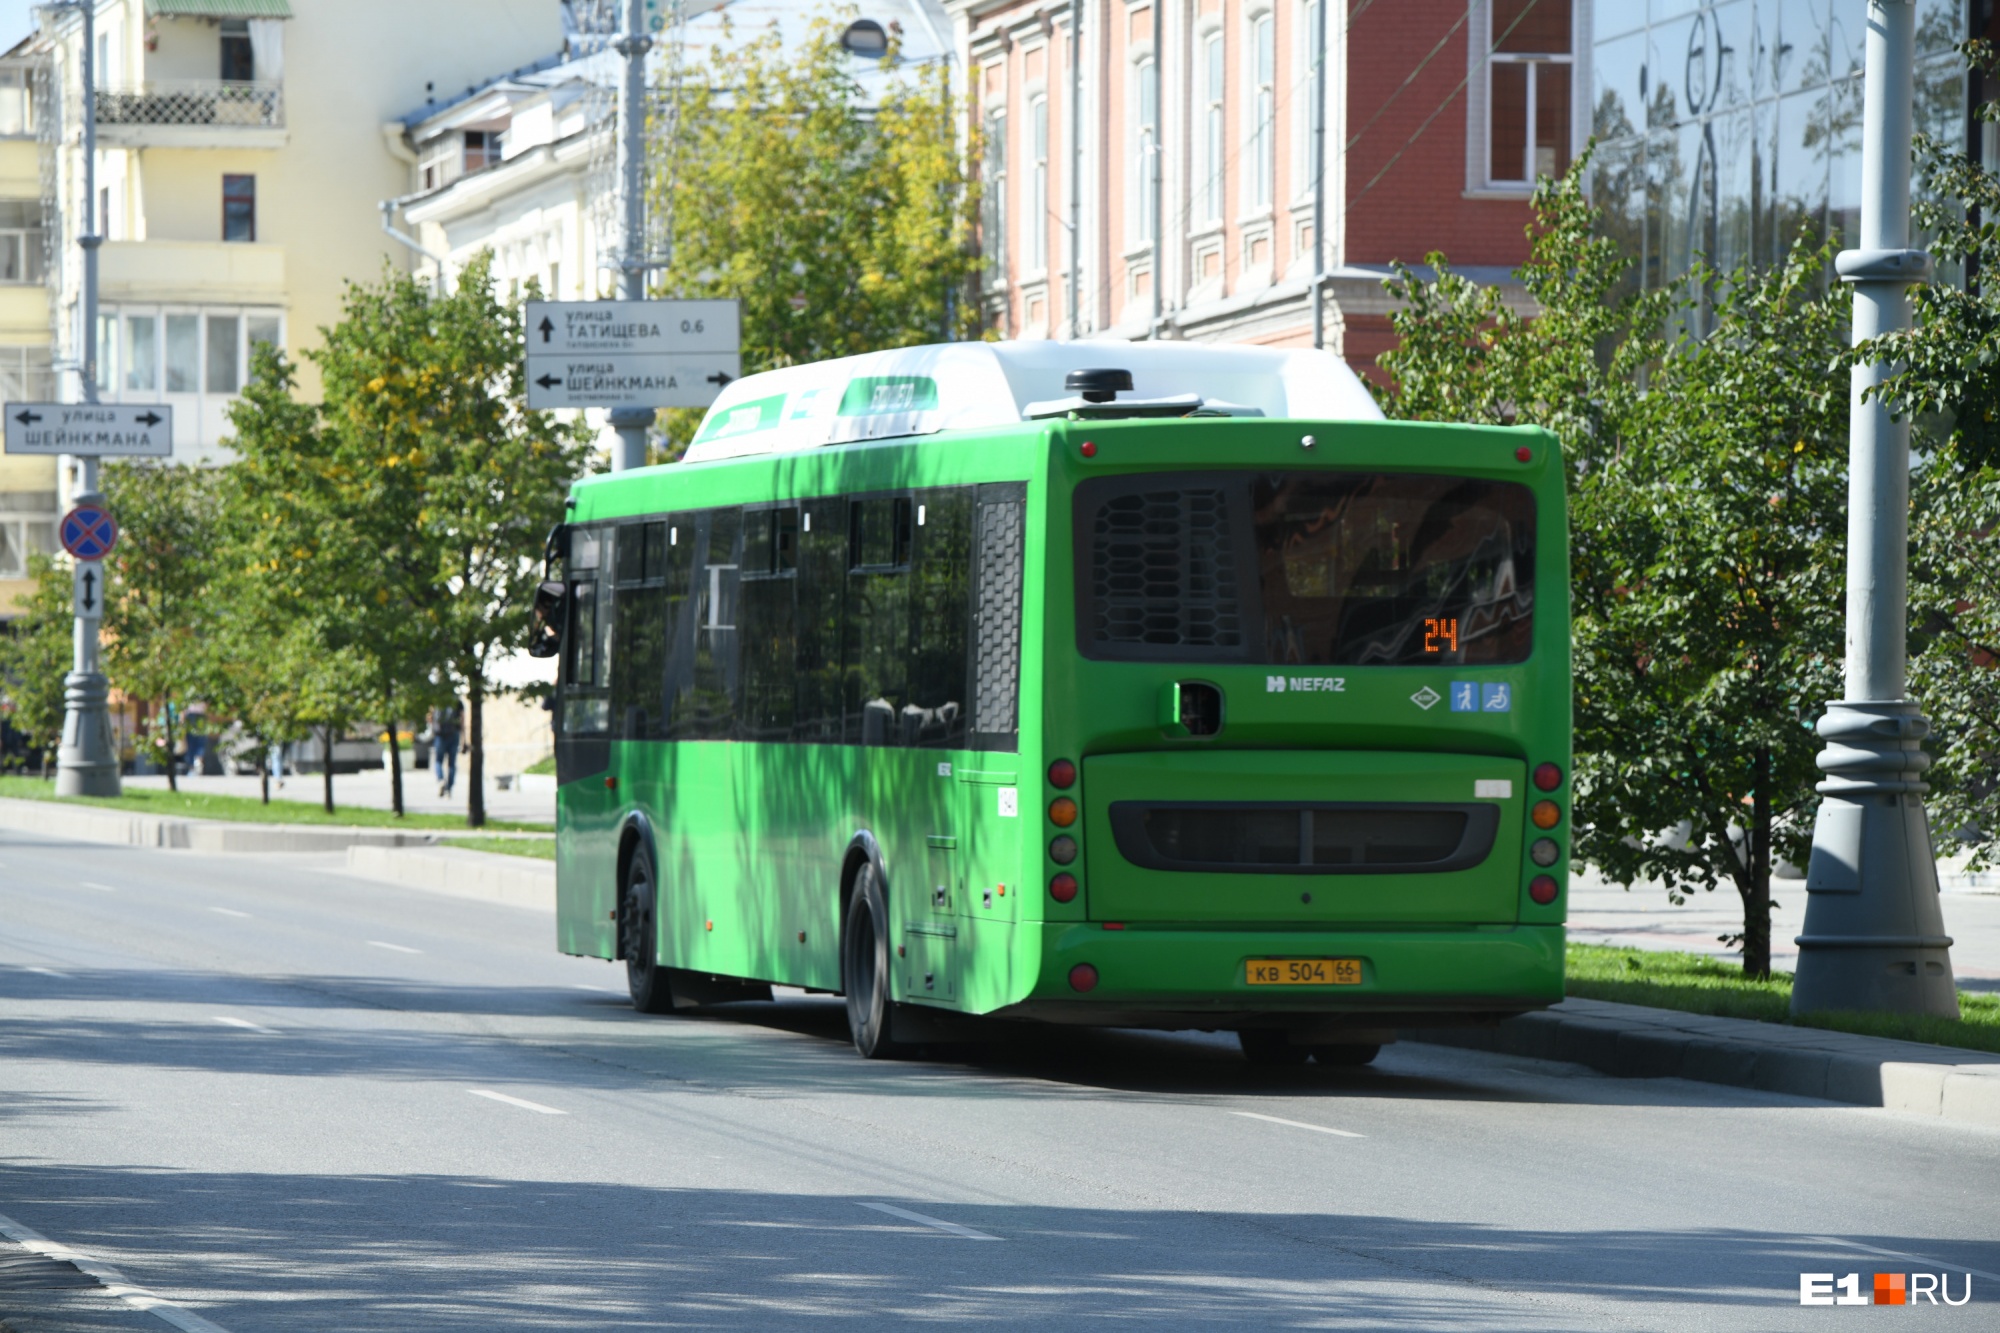 Три популярных автобусных маршрута изменят схему движения на ВИЗе